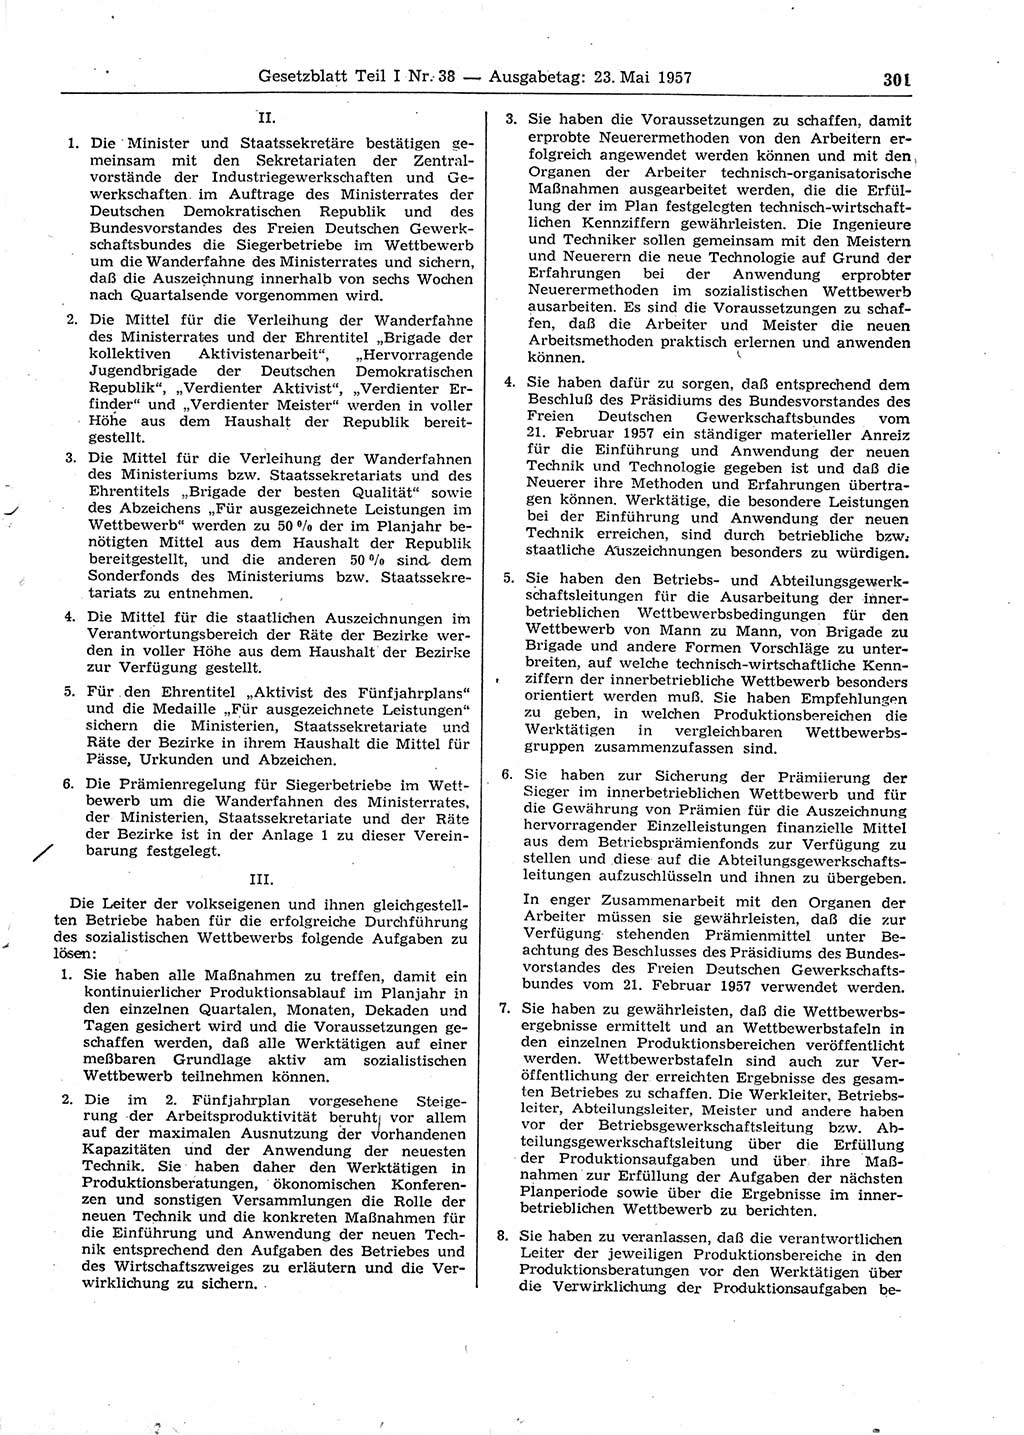 Gesetzblatt (GBl.) der Deutschen Demokratischen Republik (DDR) Teil Ⅰ 1957, Seite 301 (GBl. DDR Ⅰ 1957, S. 301)